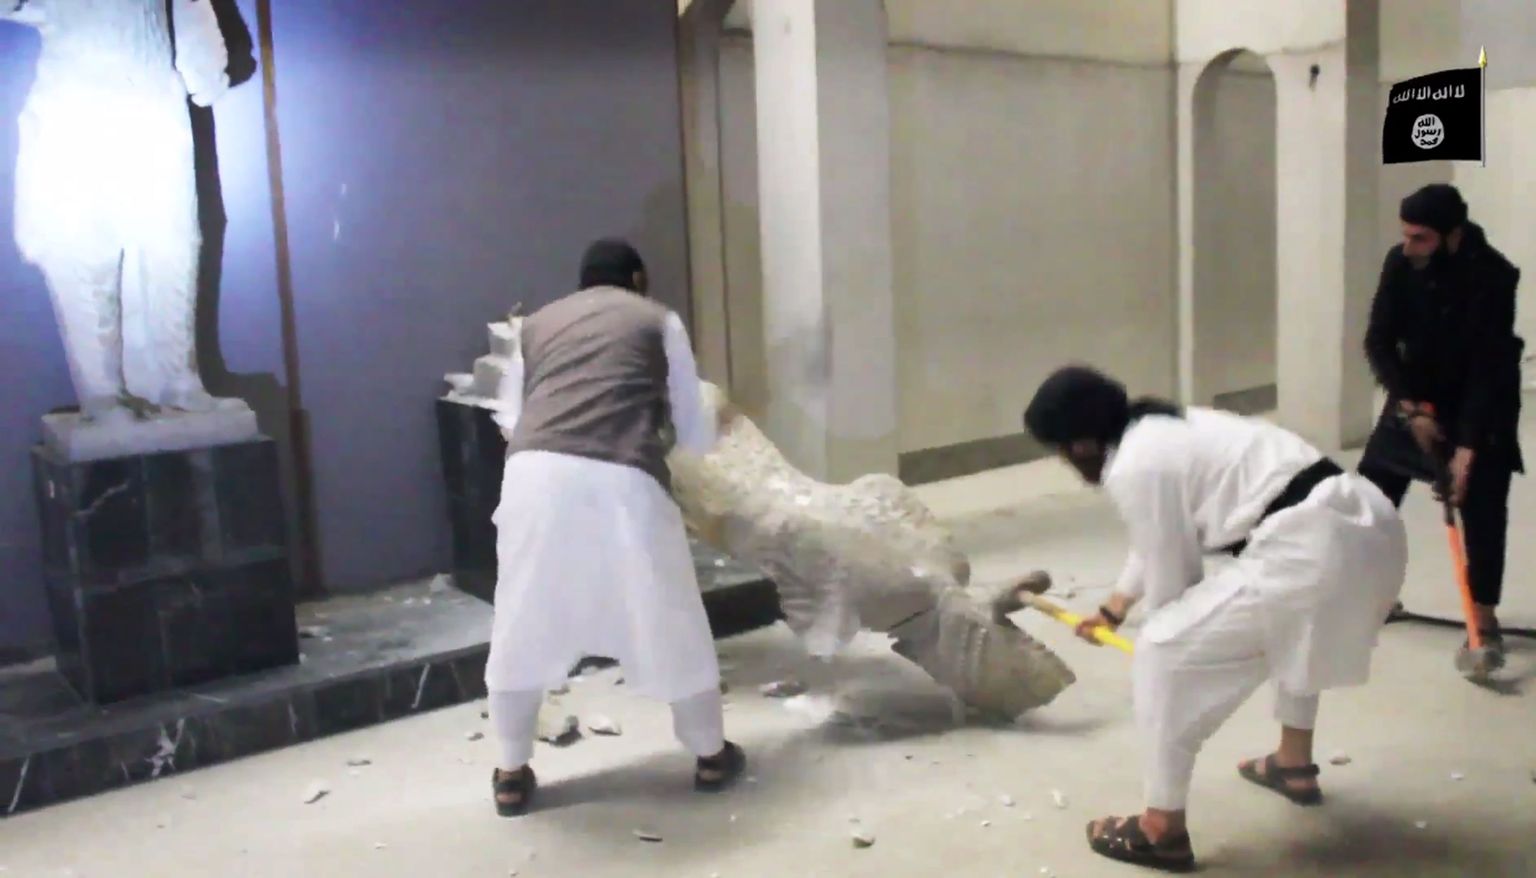 Kaader videost, kus kujutatakse purustustööd Mosuli muuseumis.